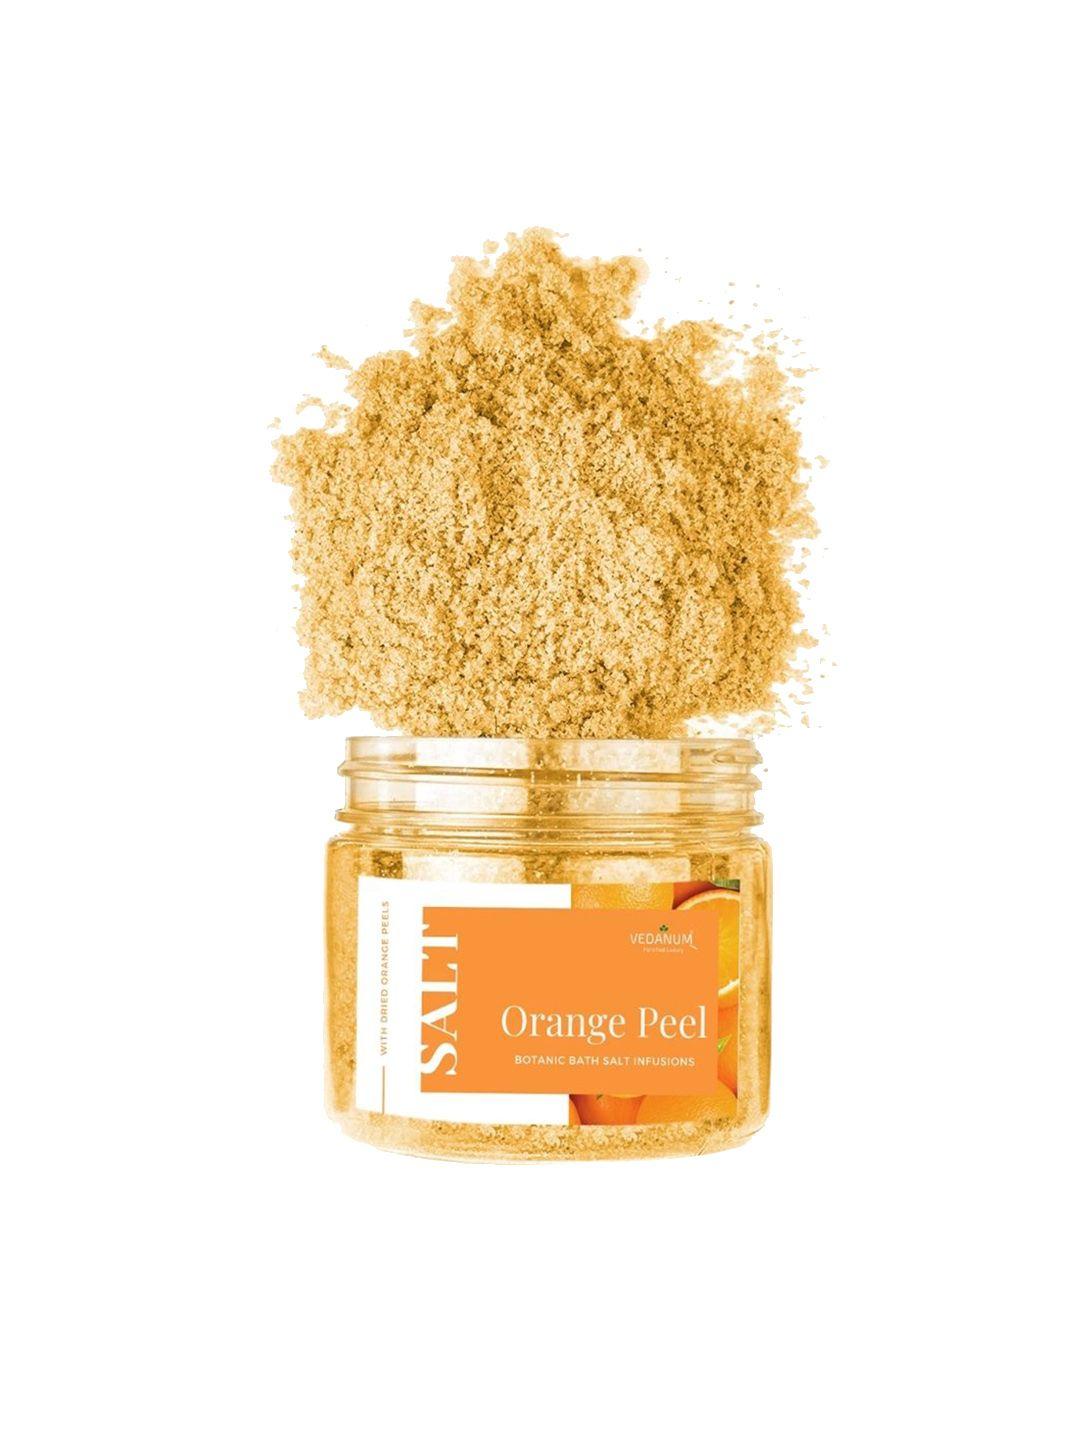 vedanum fortified luxury botanic bath salt infusions 200 gm - orange peel